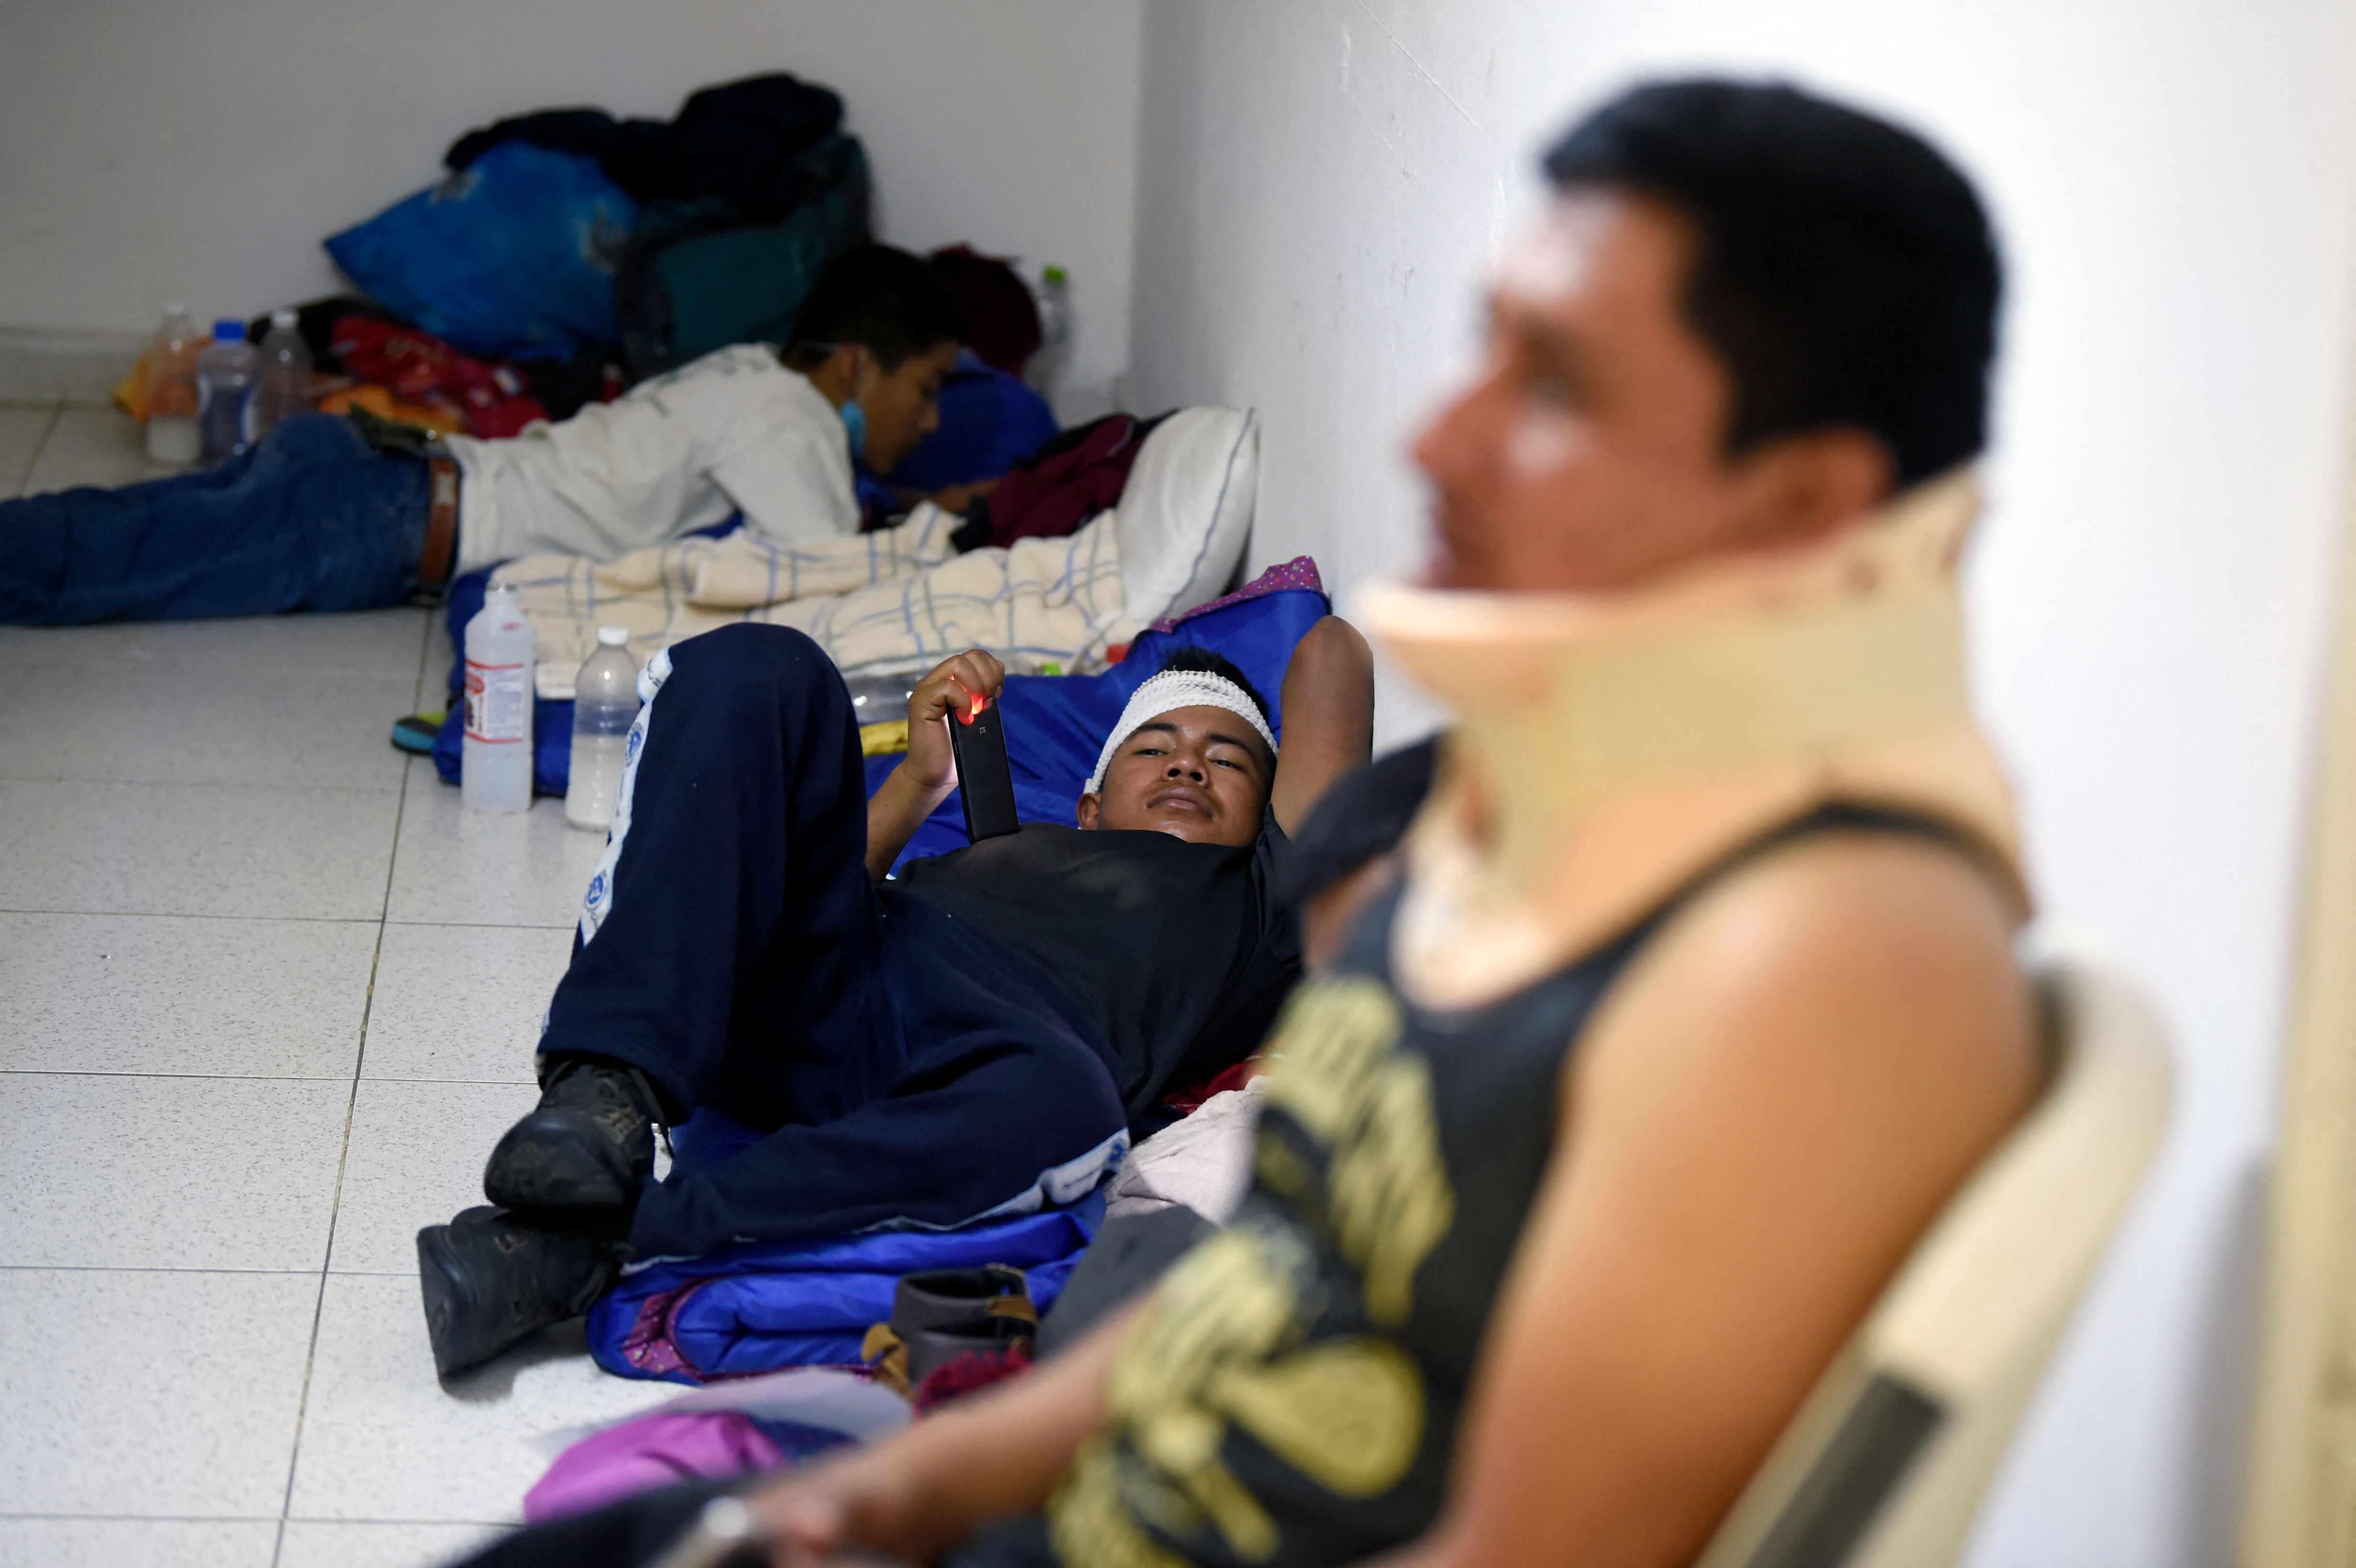 Los migrantes heridos en el accidente se recuperan en los hospitales a donde fueron llevados por socorristas. (Foto Prensa Libre: AFP)